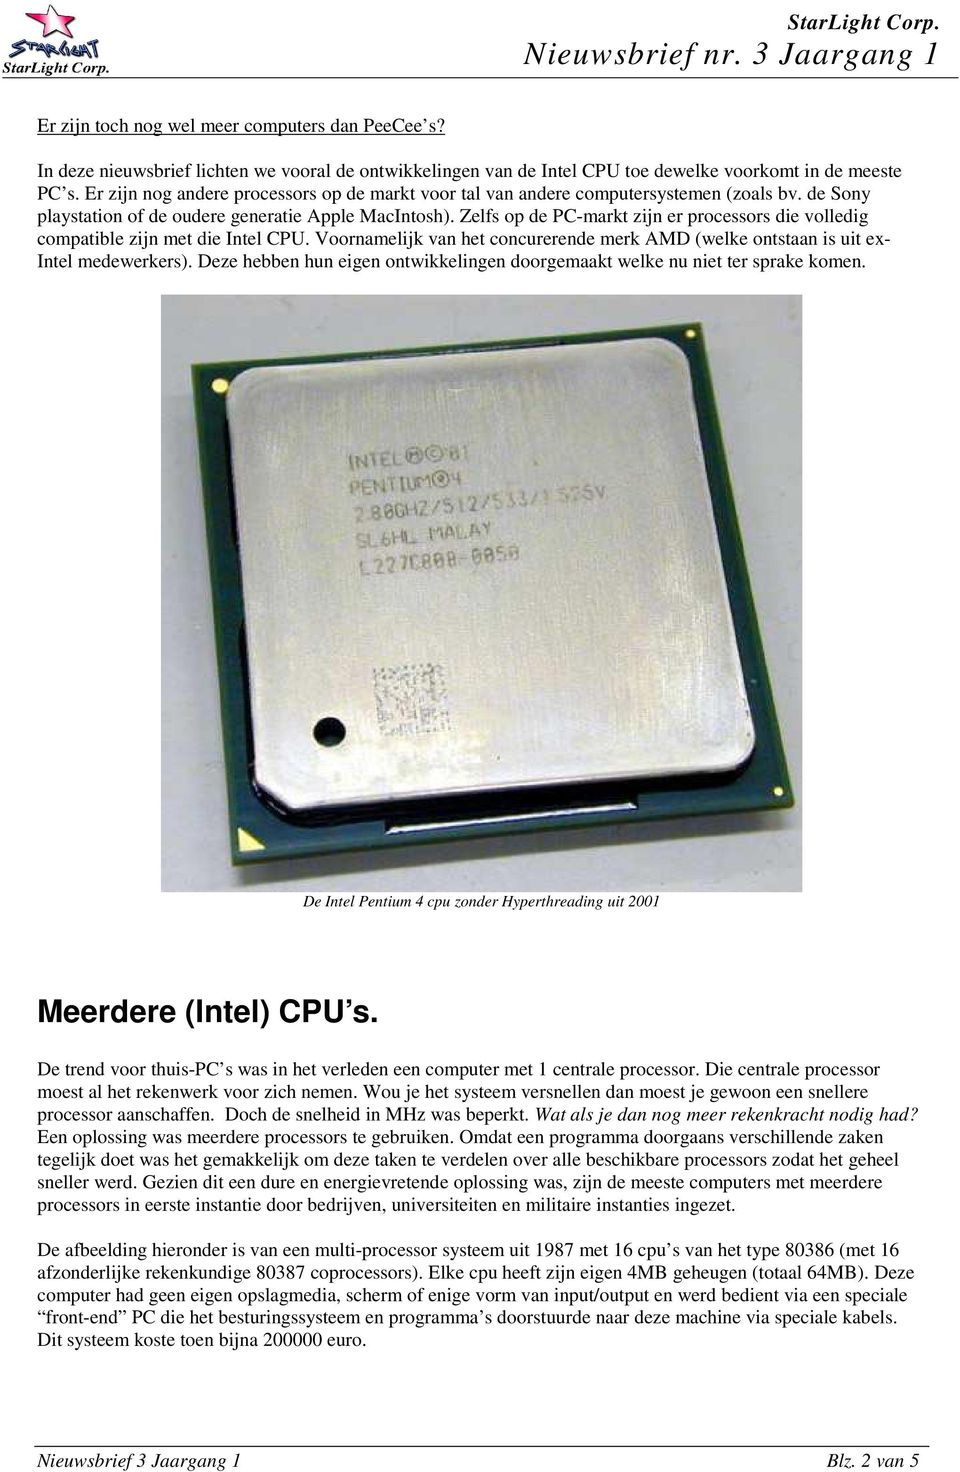 Zelfs op de PC-markt zijn er processors die volledig compatible zijn met die Intel CPU. Voornamelijk van het concurerende merk AMD (welke ontstaan is uit ex- Intel medewerkers).